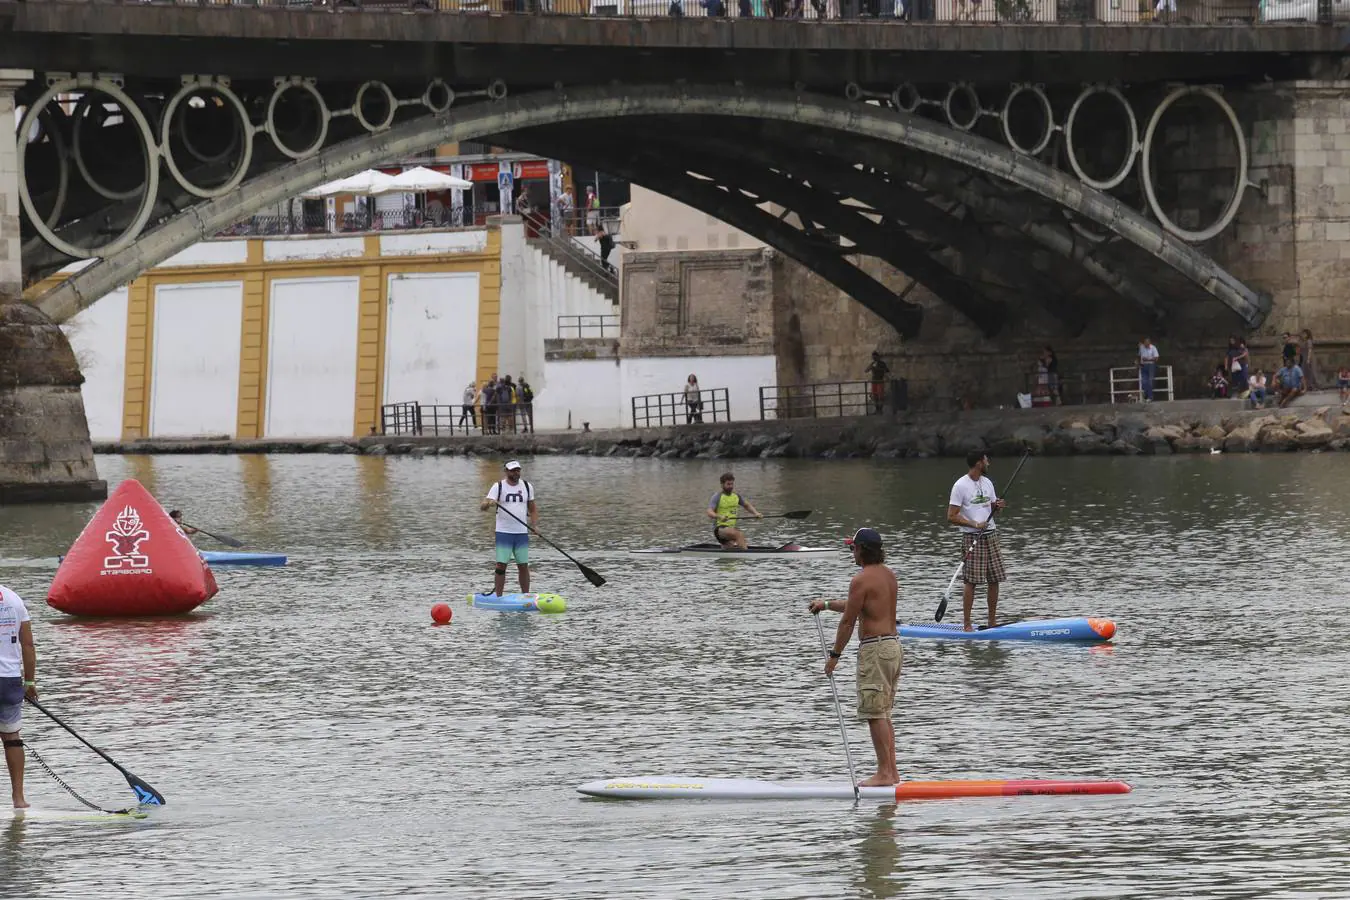 La Tercera Edición del Festival de paddle surf Sevilla SUP, en imágenes